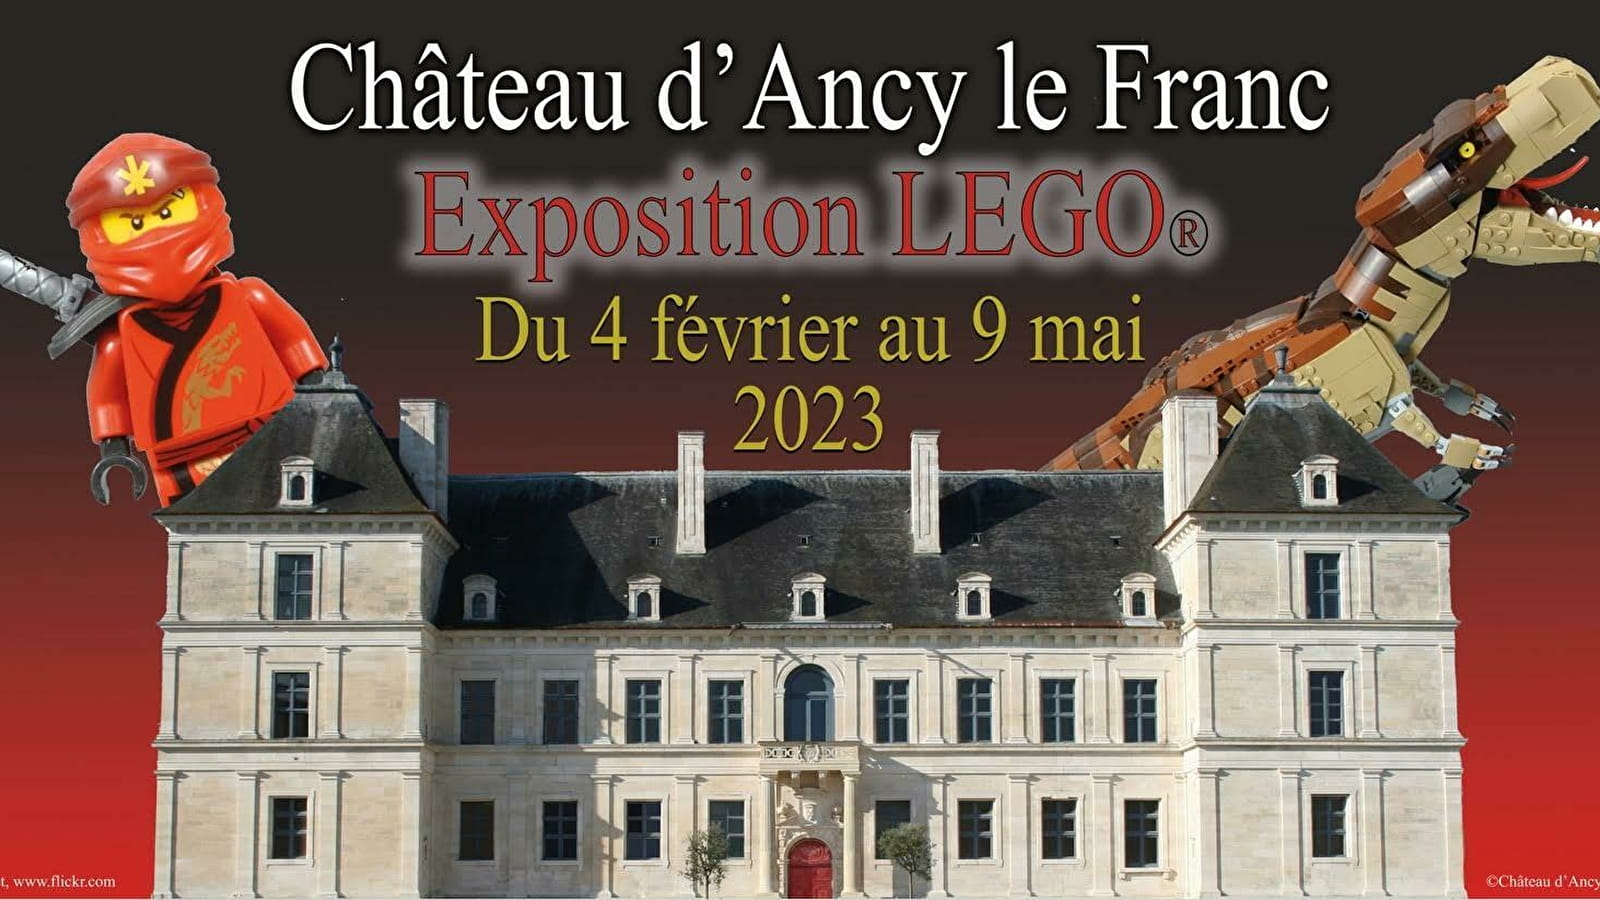 Exposition LEGO - Ancy-le-Franc